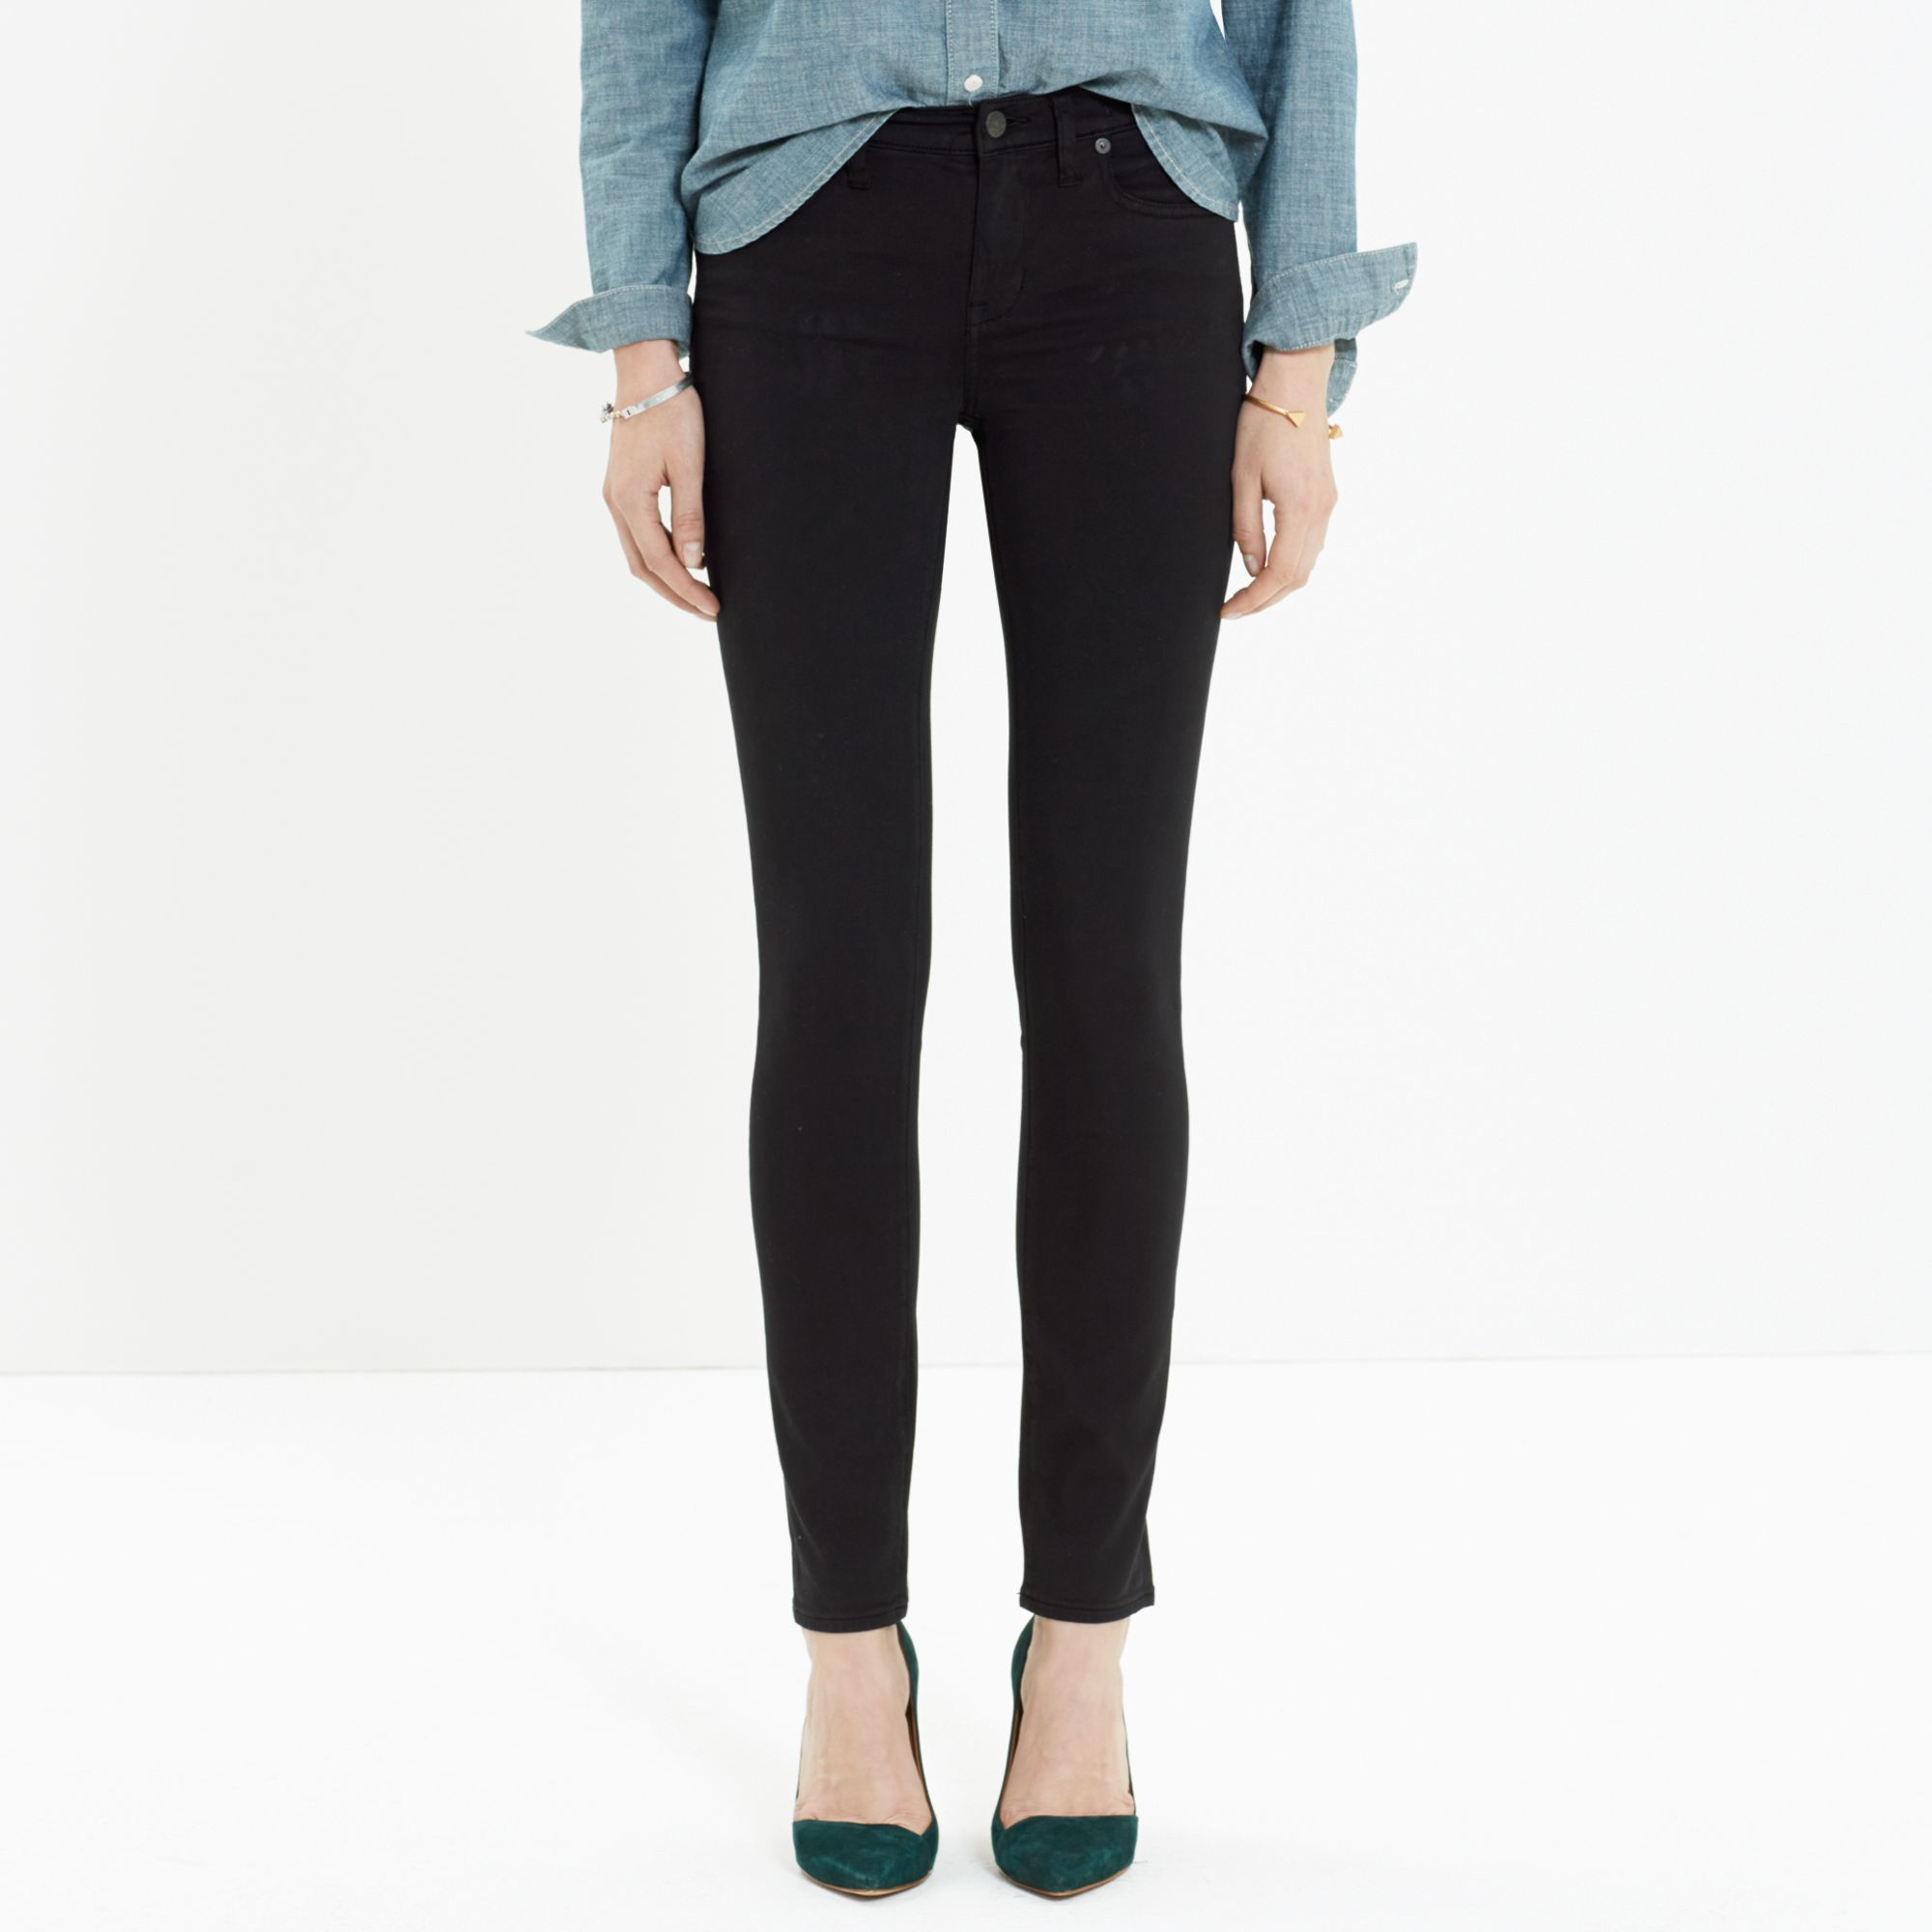 Lyst - Madewell Skinny Skinny Sateen Jeans in Black